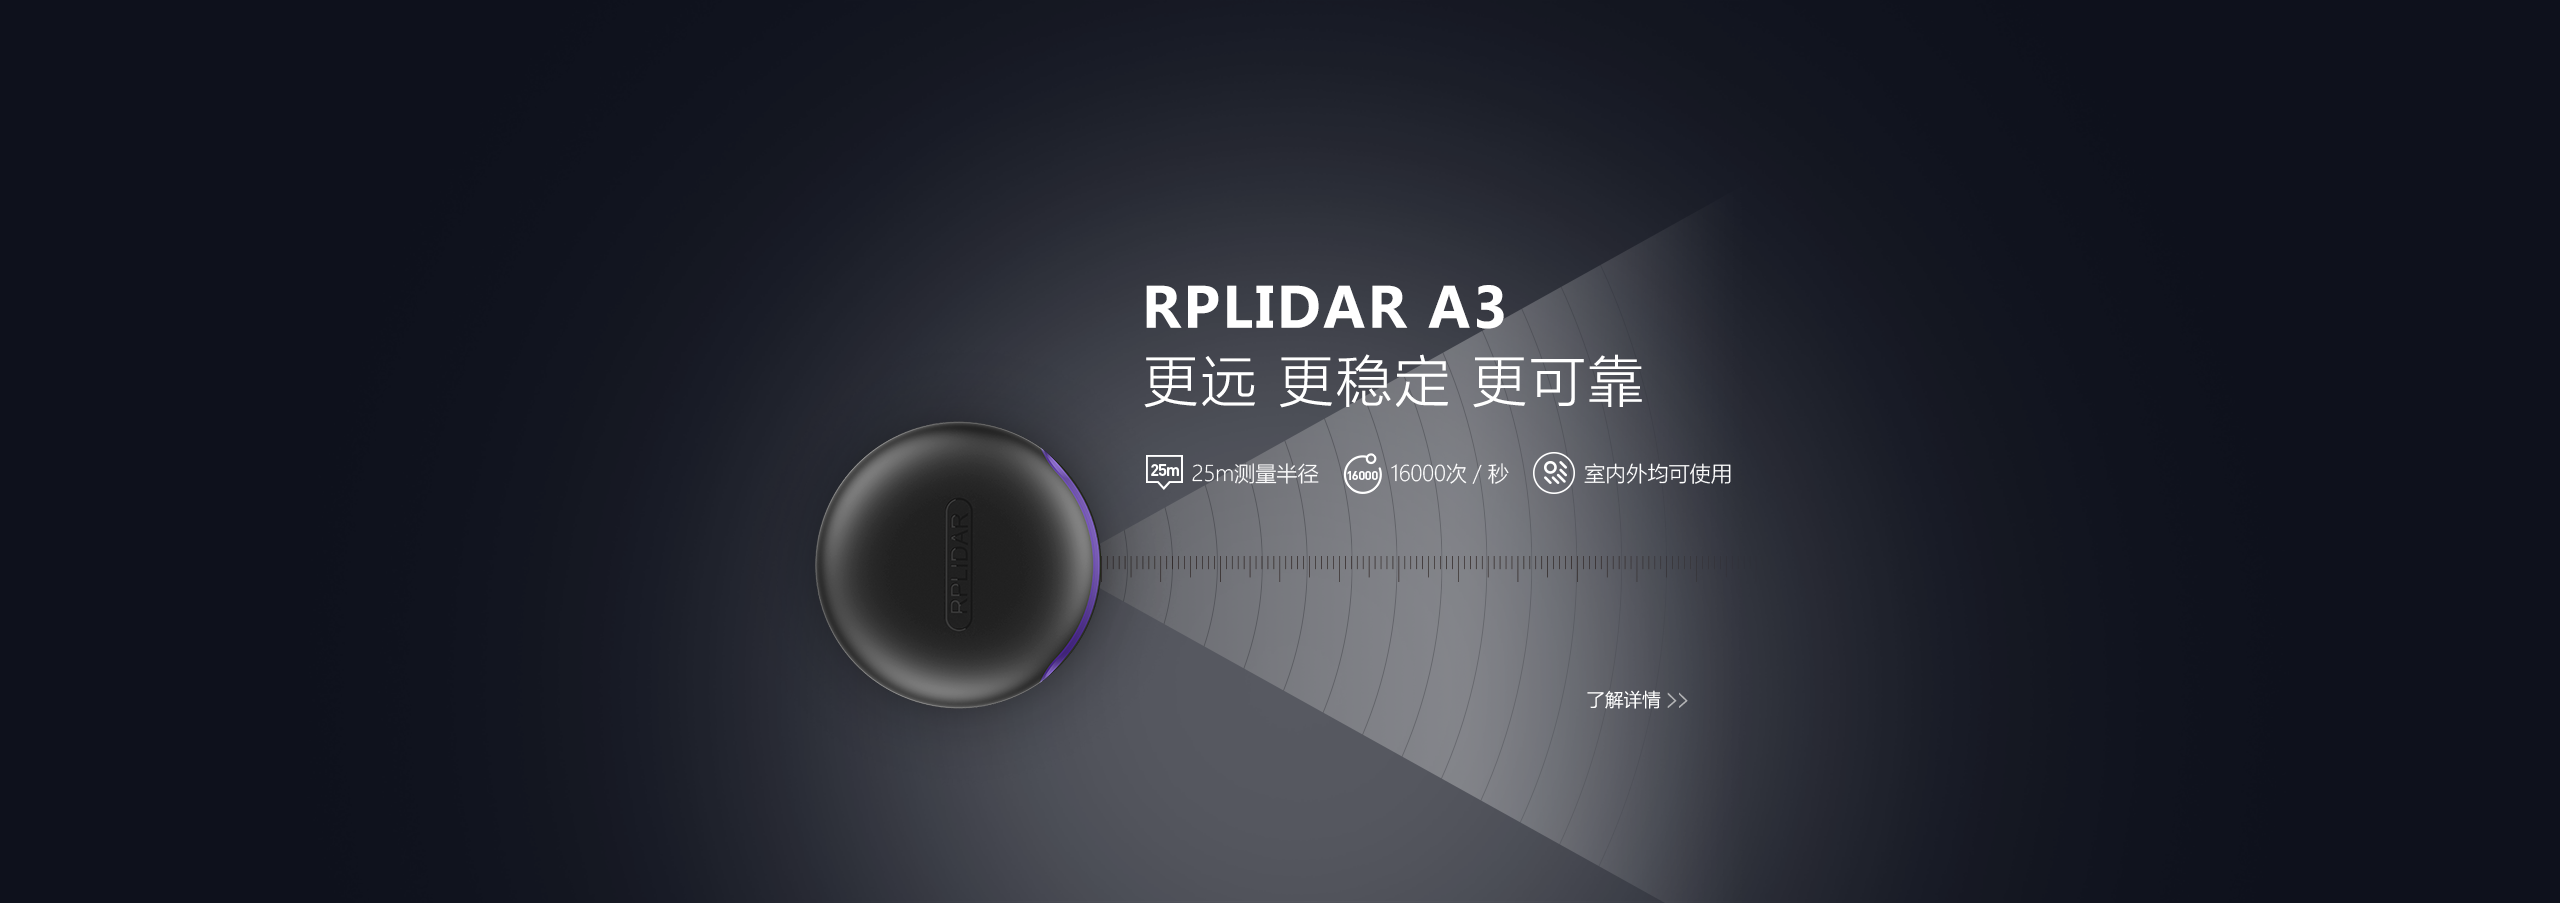 RPLIDAR A3